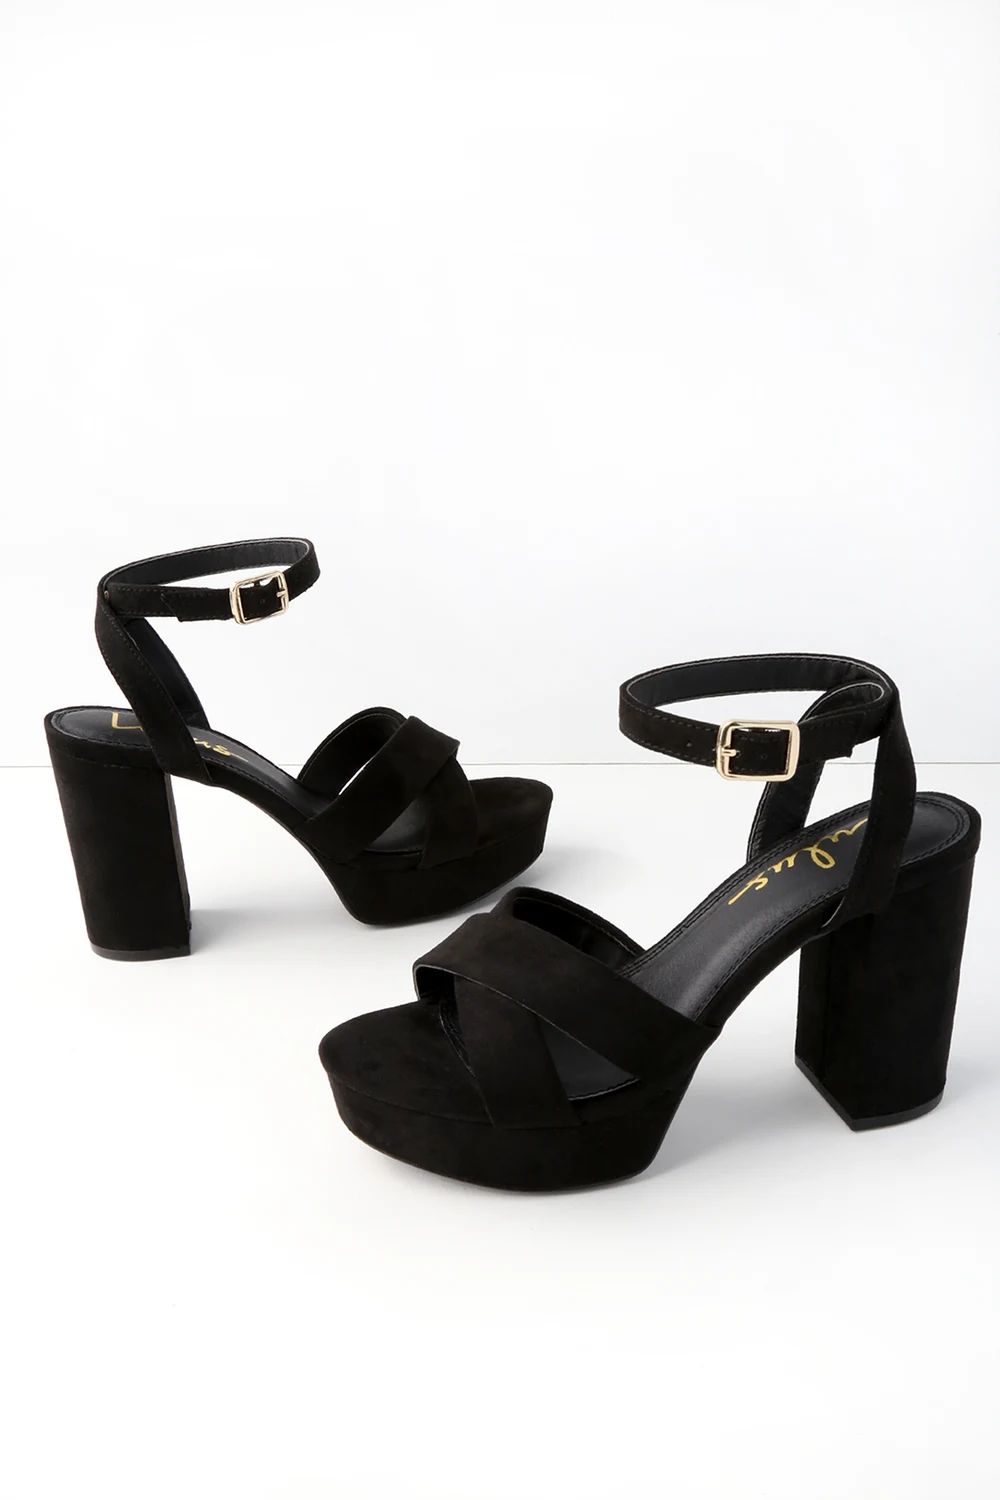 Selah Black Suede Ankle Strap Heels | Lulus (US)